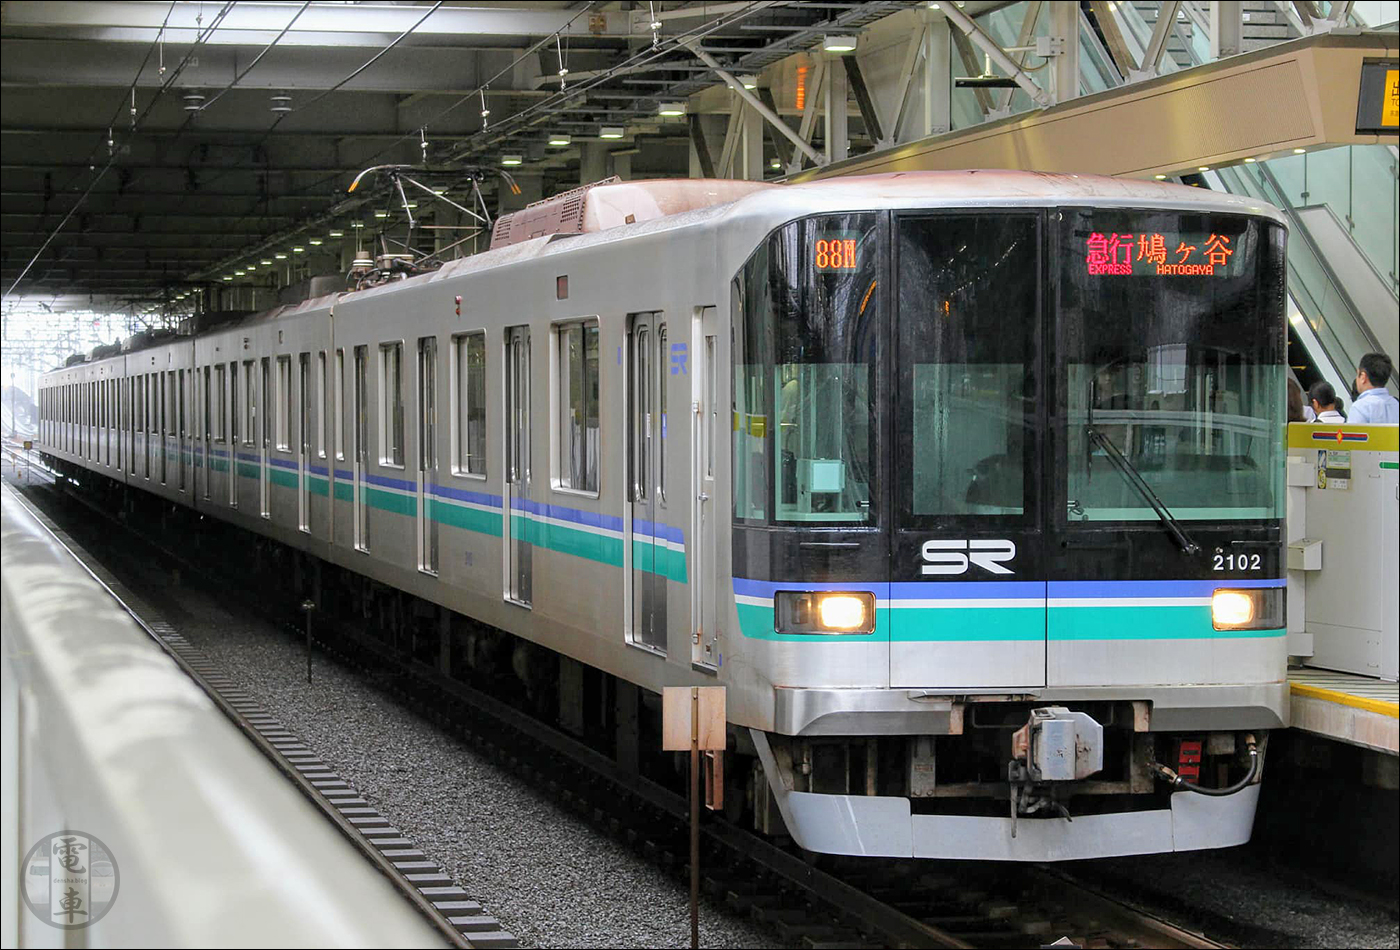 A Saitama Rapid Transit egyik 2000-es sorozatú járműve.